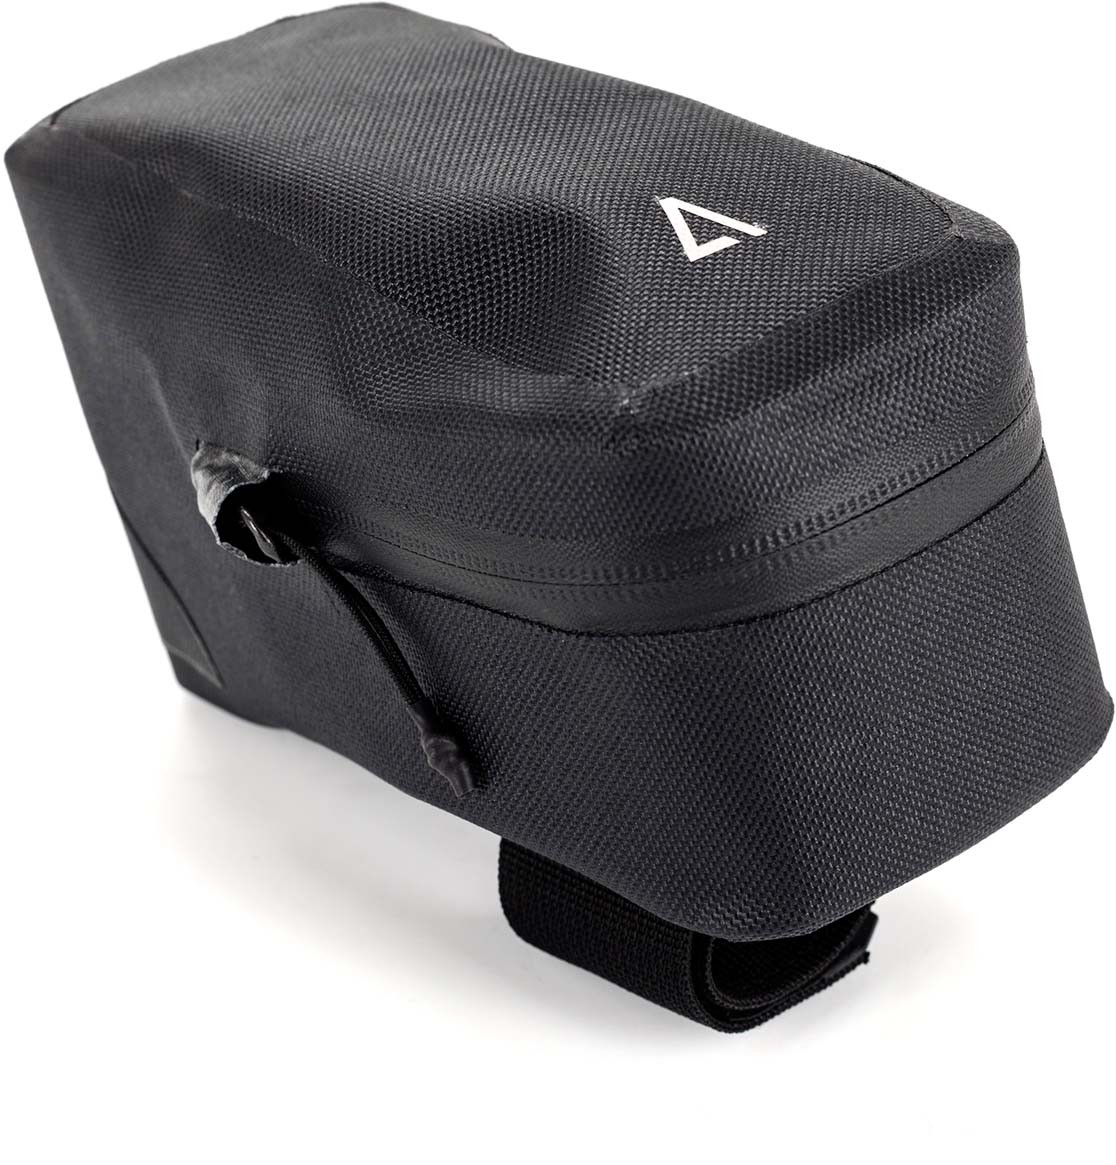 ACID TOPTUBE 1 bike bag black